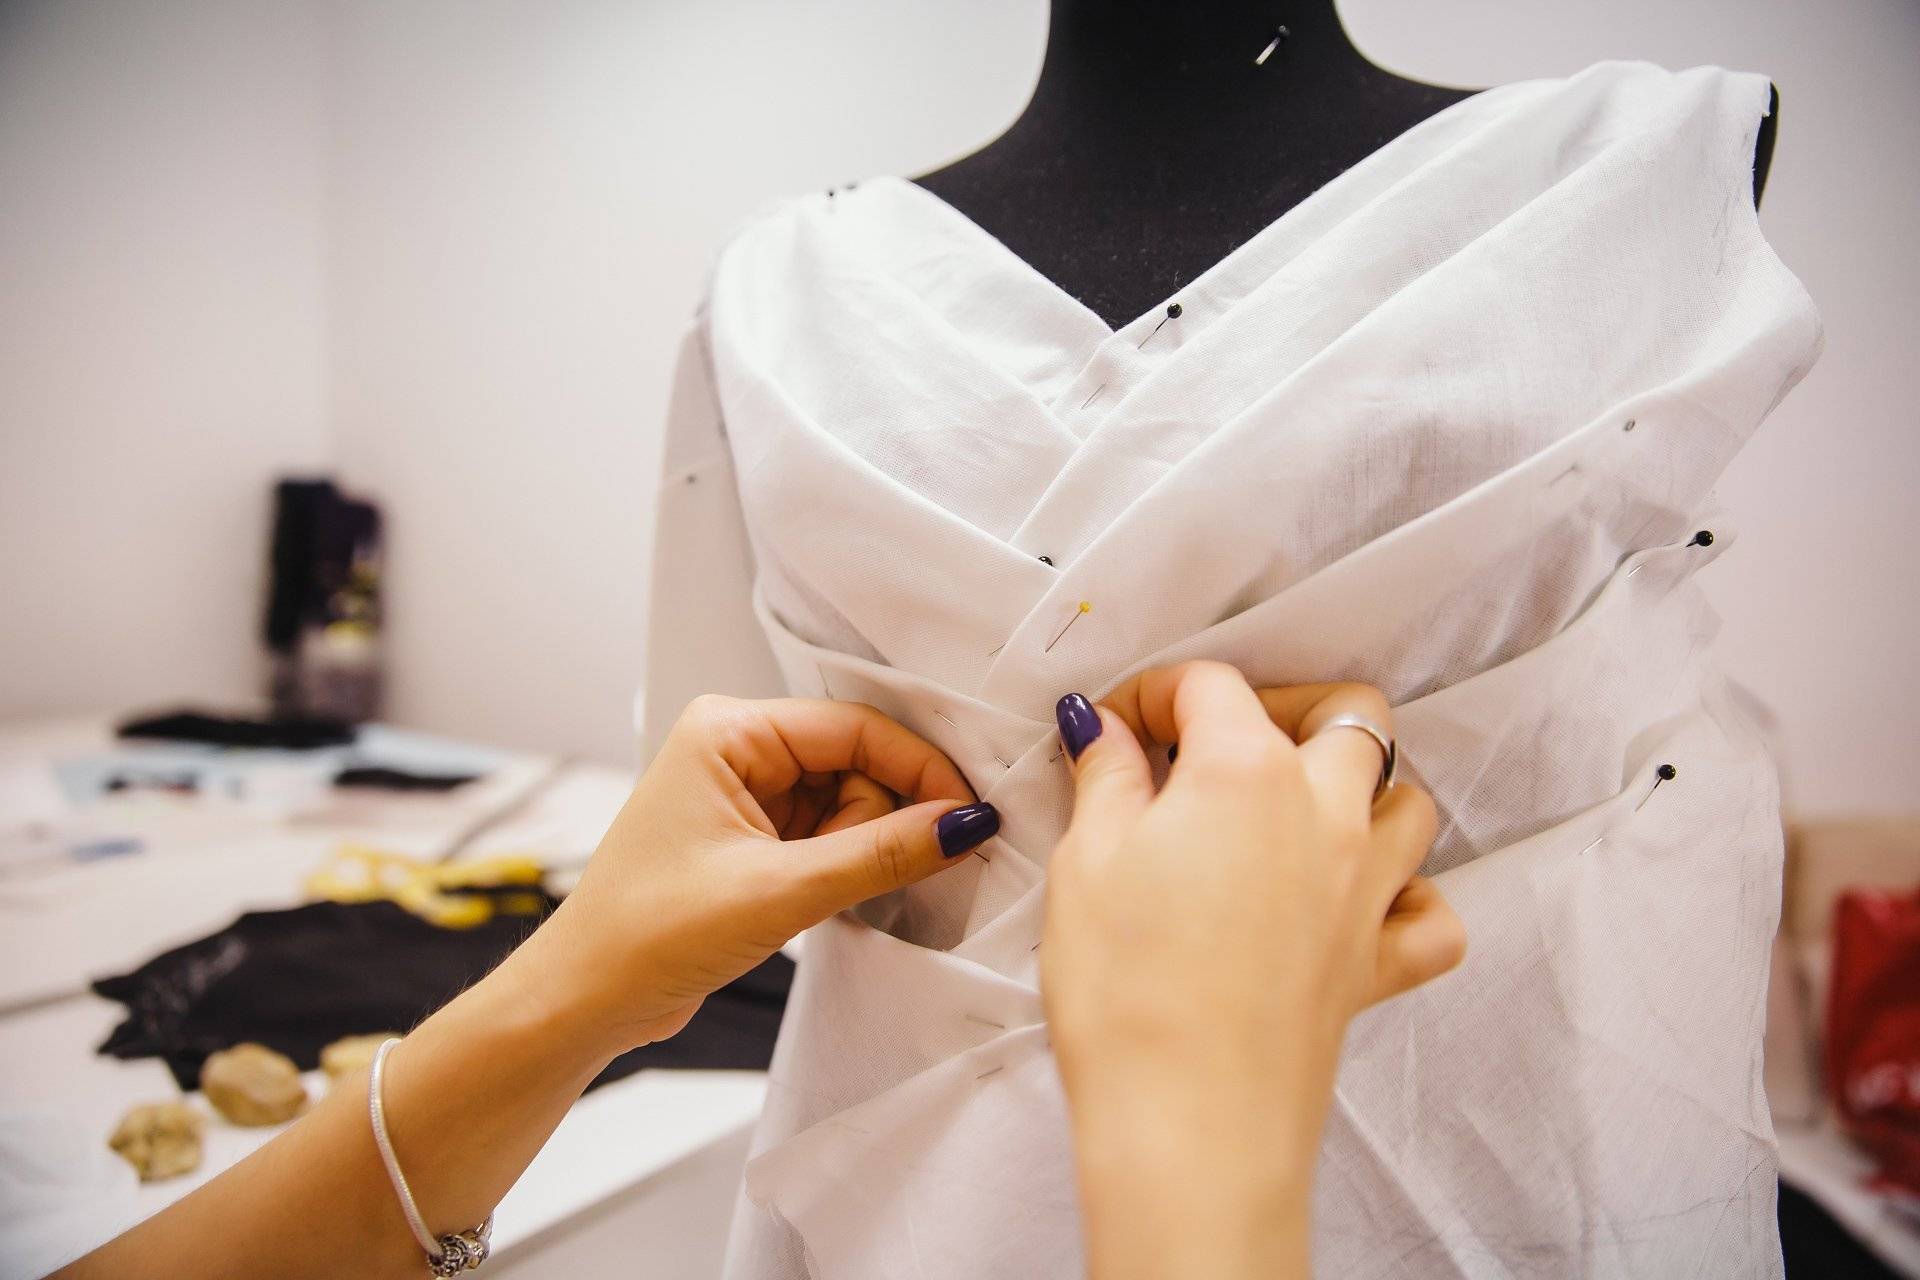 Платье пошив фабрика. Индивидуальный пошив. Пошив платья. Шитье одежды. Примерка платья в ателье.